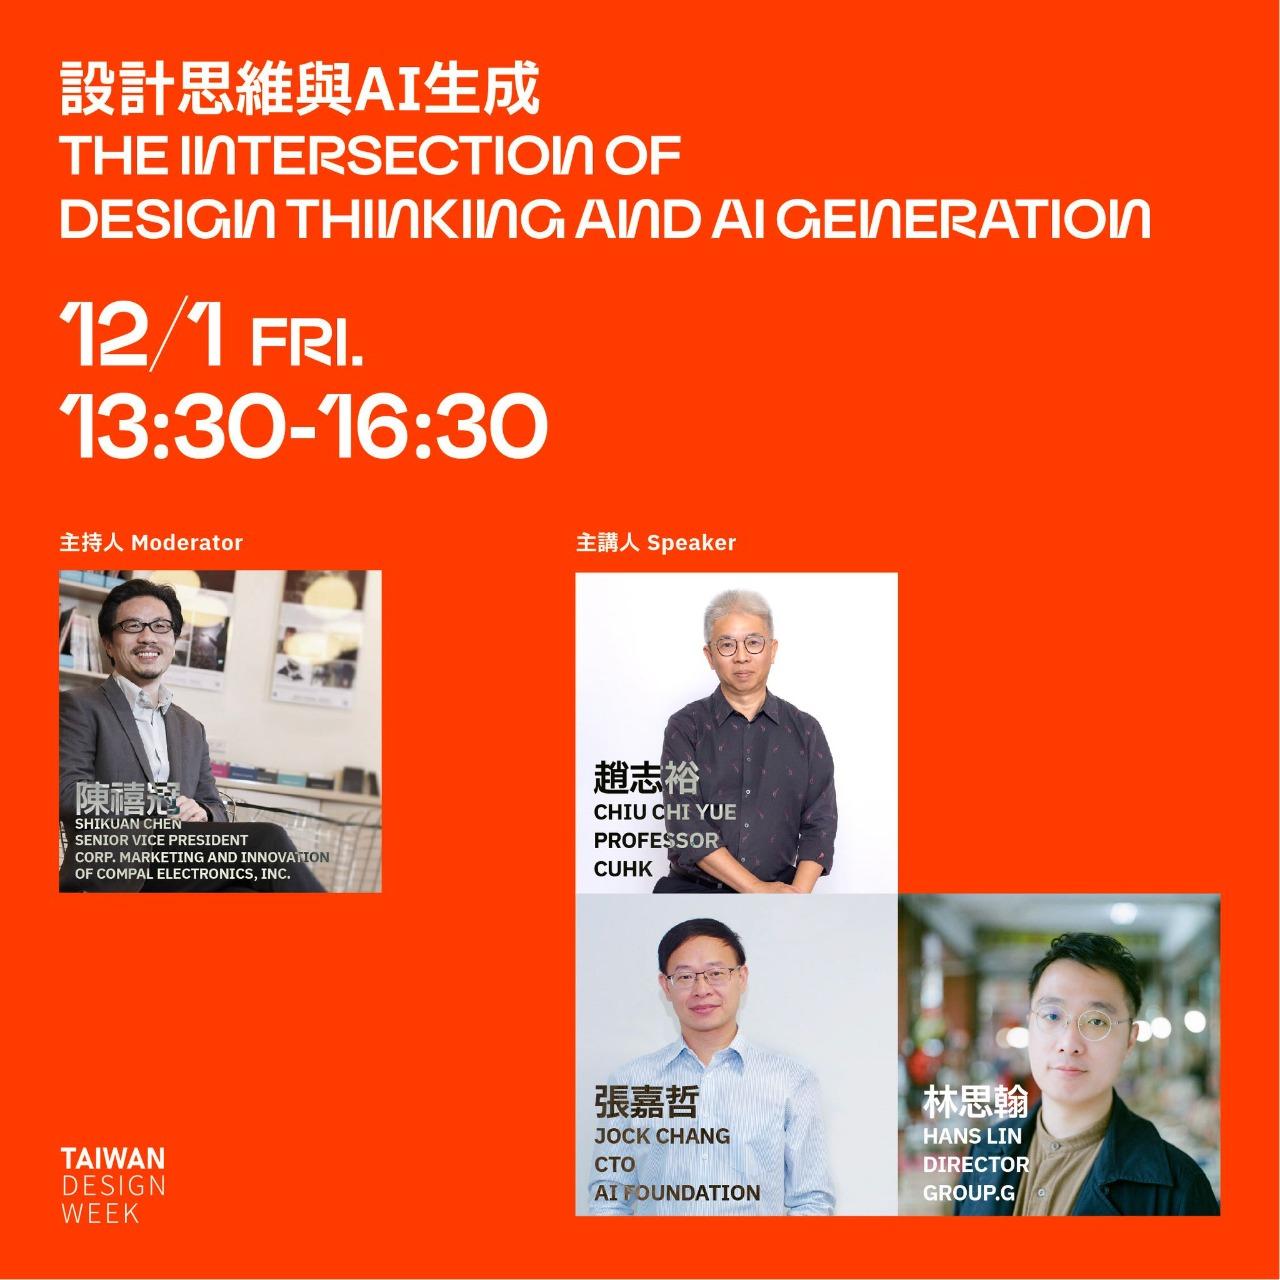 林思翰 HansLin 林思翰 台灣設計週 Taiwan Design Week 設計思維與AI生成 The Intersection of Design Thinking and AI Generation